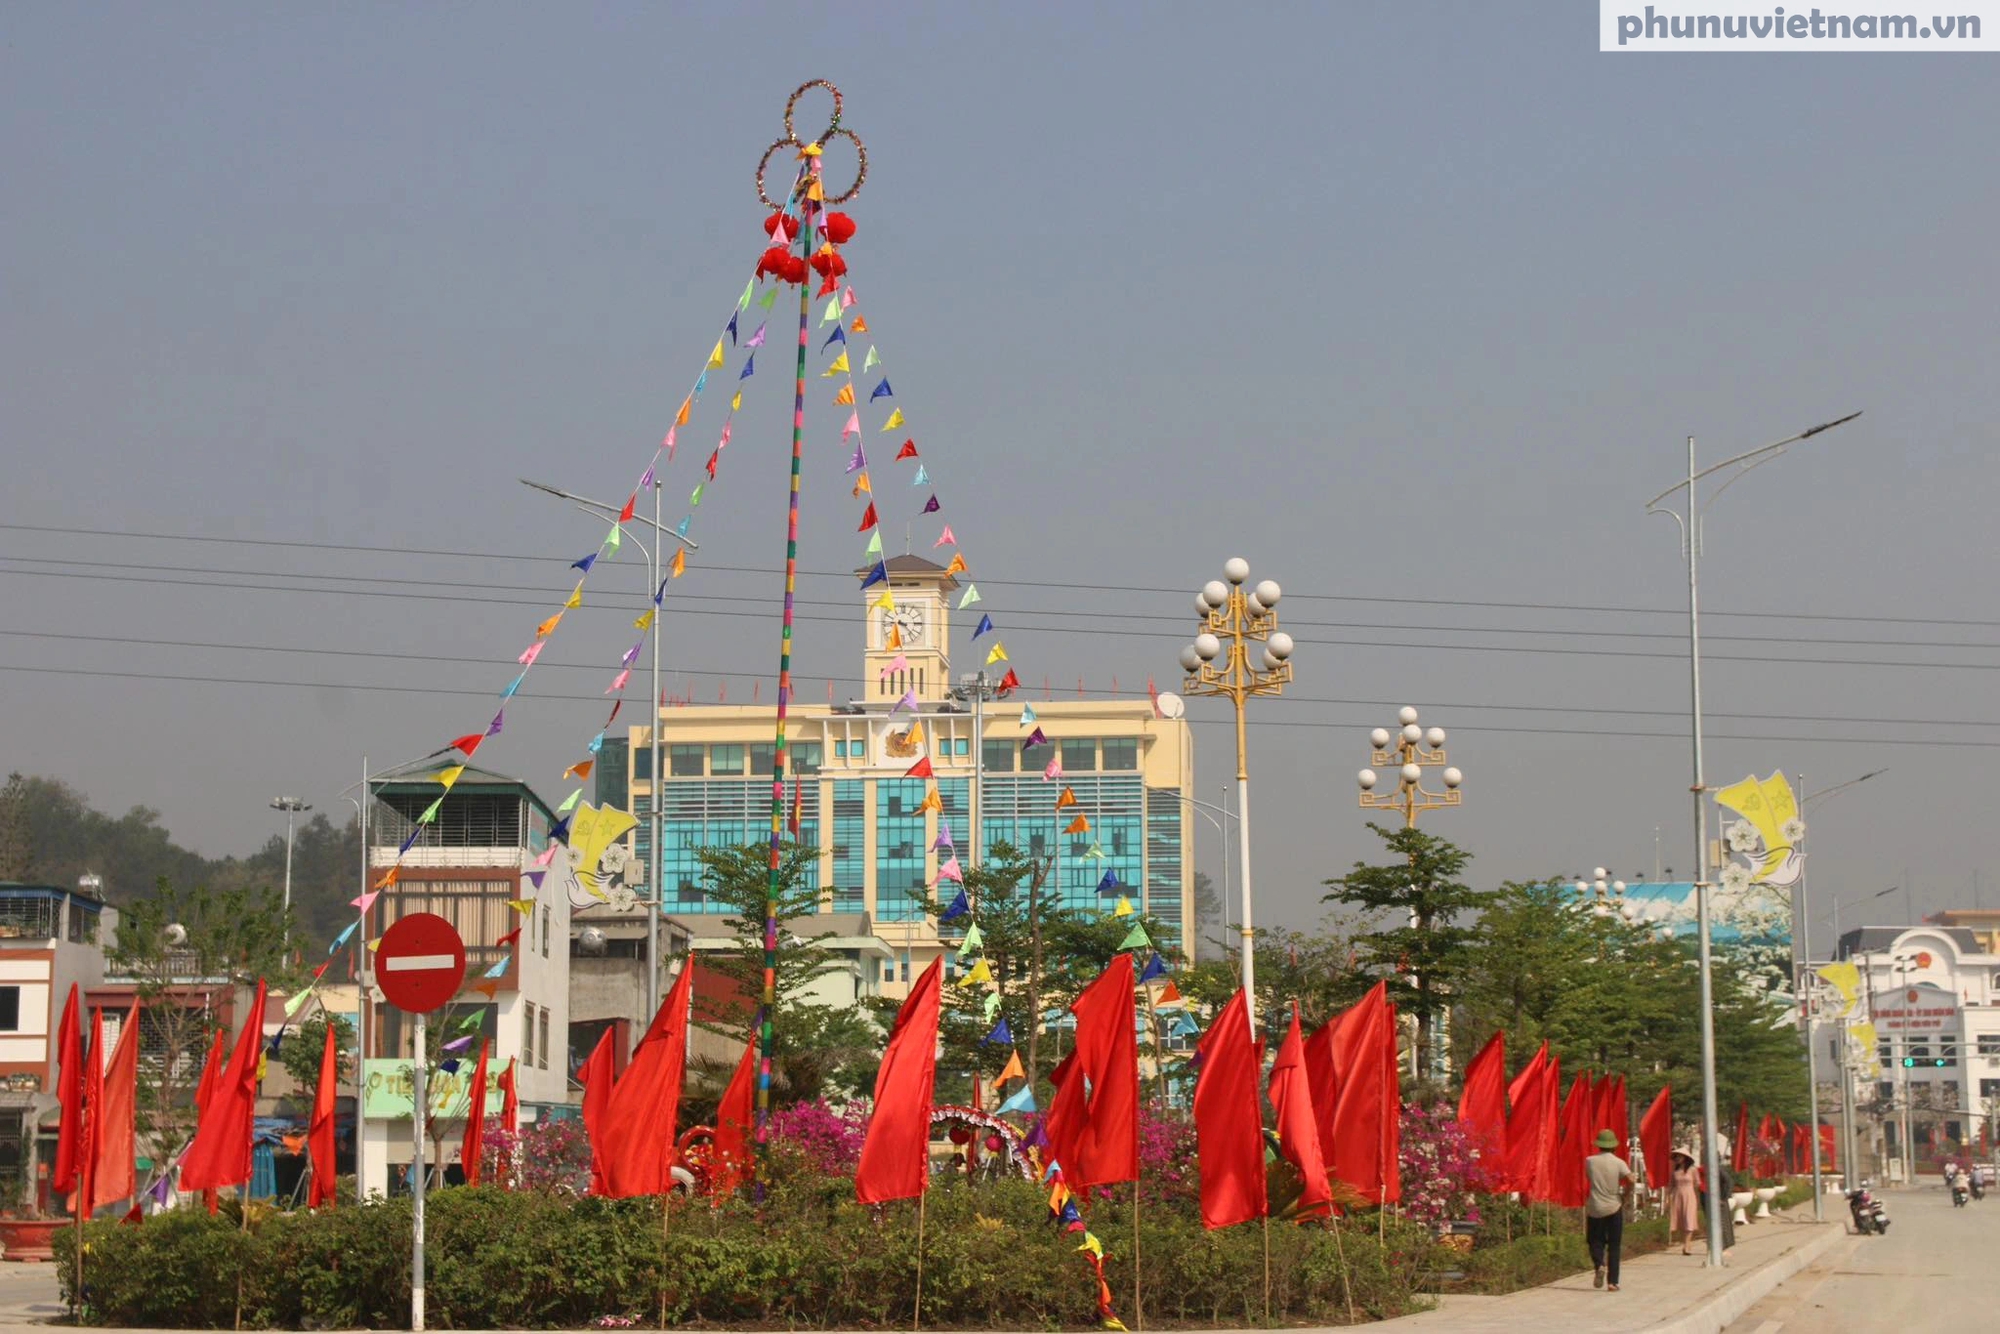 Thành phố Điện Biên Phủ nhộn nhịp, rực rỡ cờ hoa chào mừng kỷ niệm 70 năm chiến thắng lịch sử- Ảnh 8.